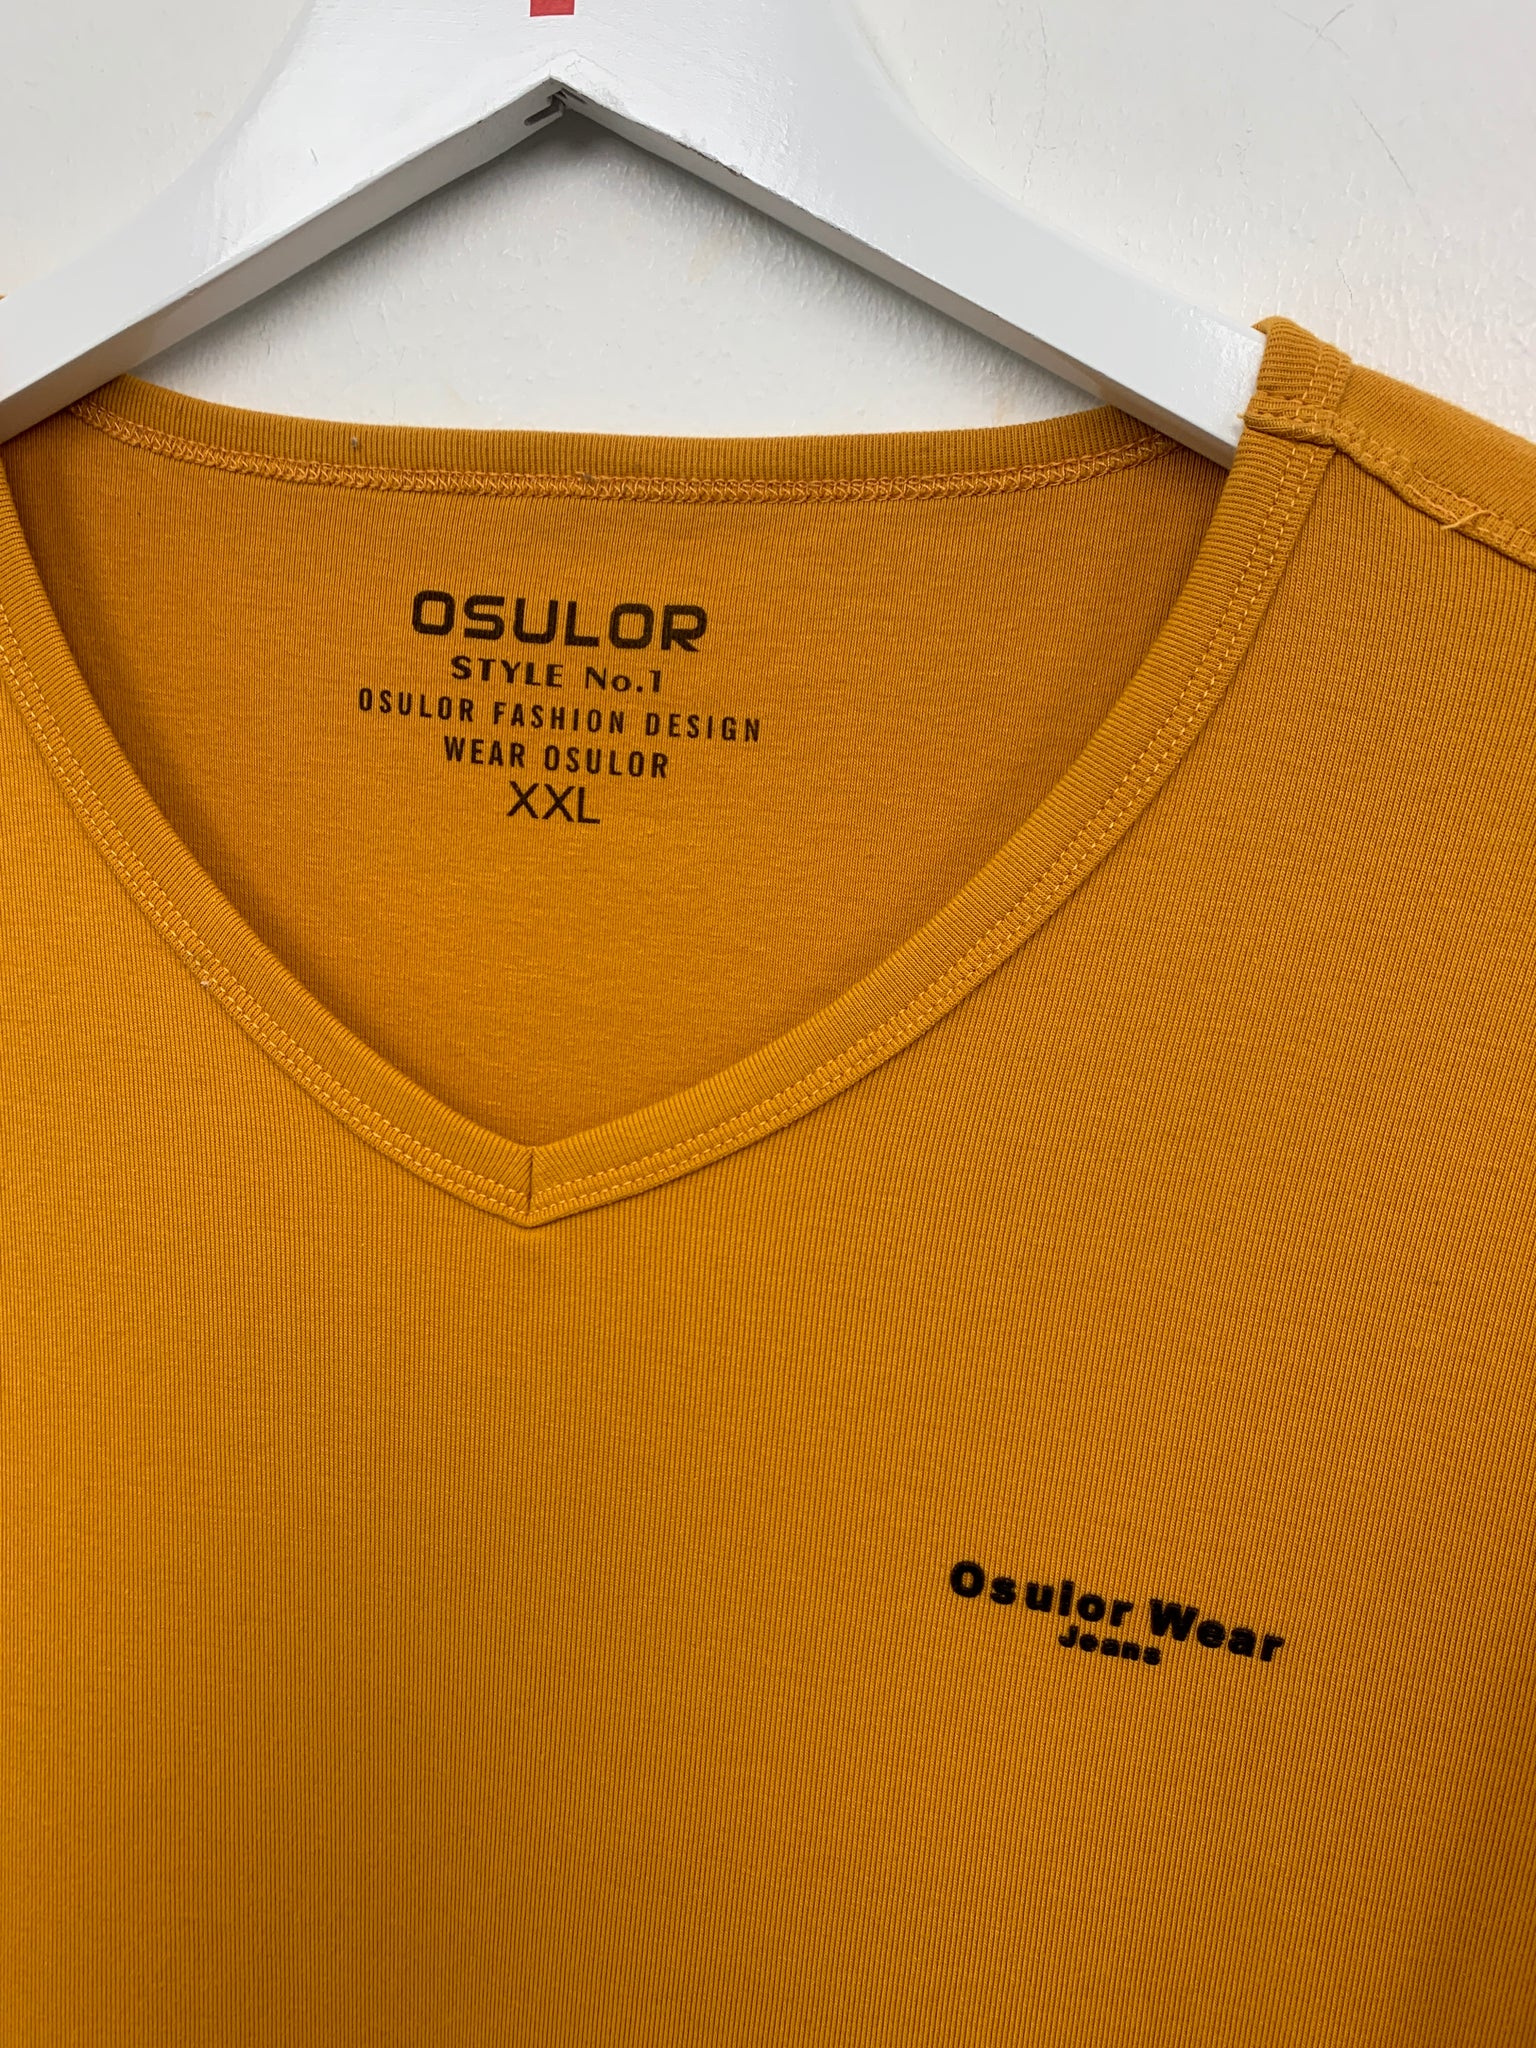 Osulor wear T-shirt